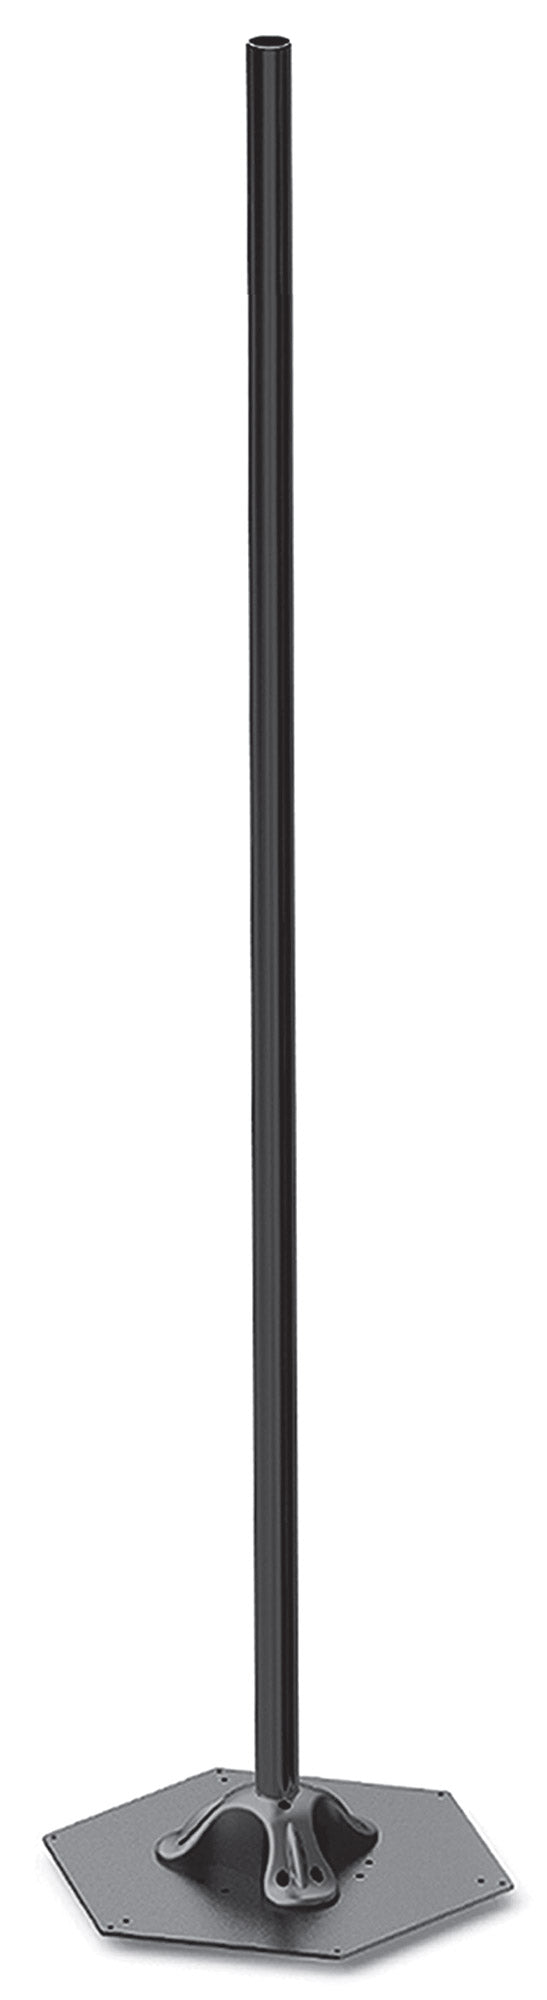 Elegance Pole H214 cm pour Lampes Chauffantes Electriques Moel 4464 Noir prezzo